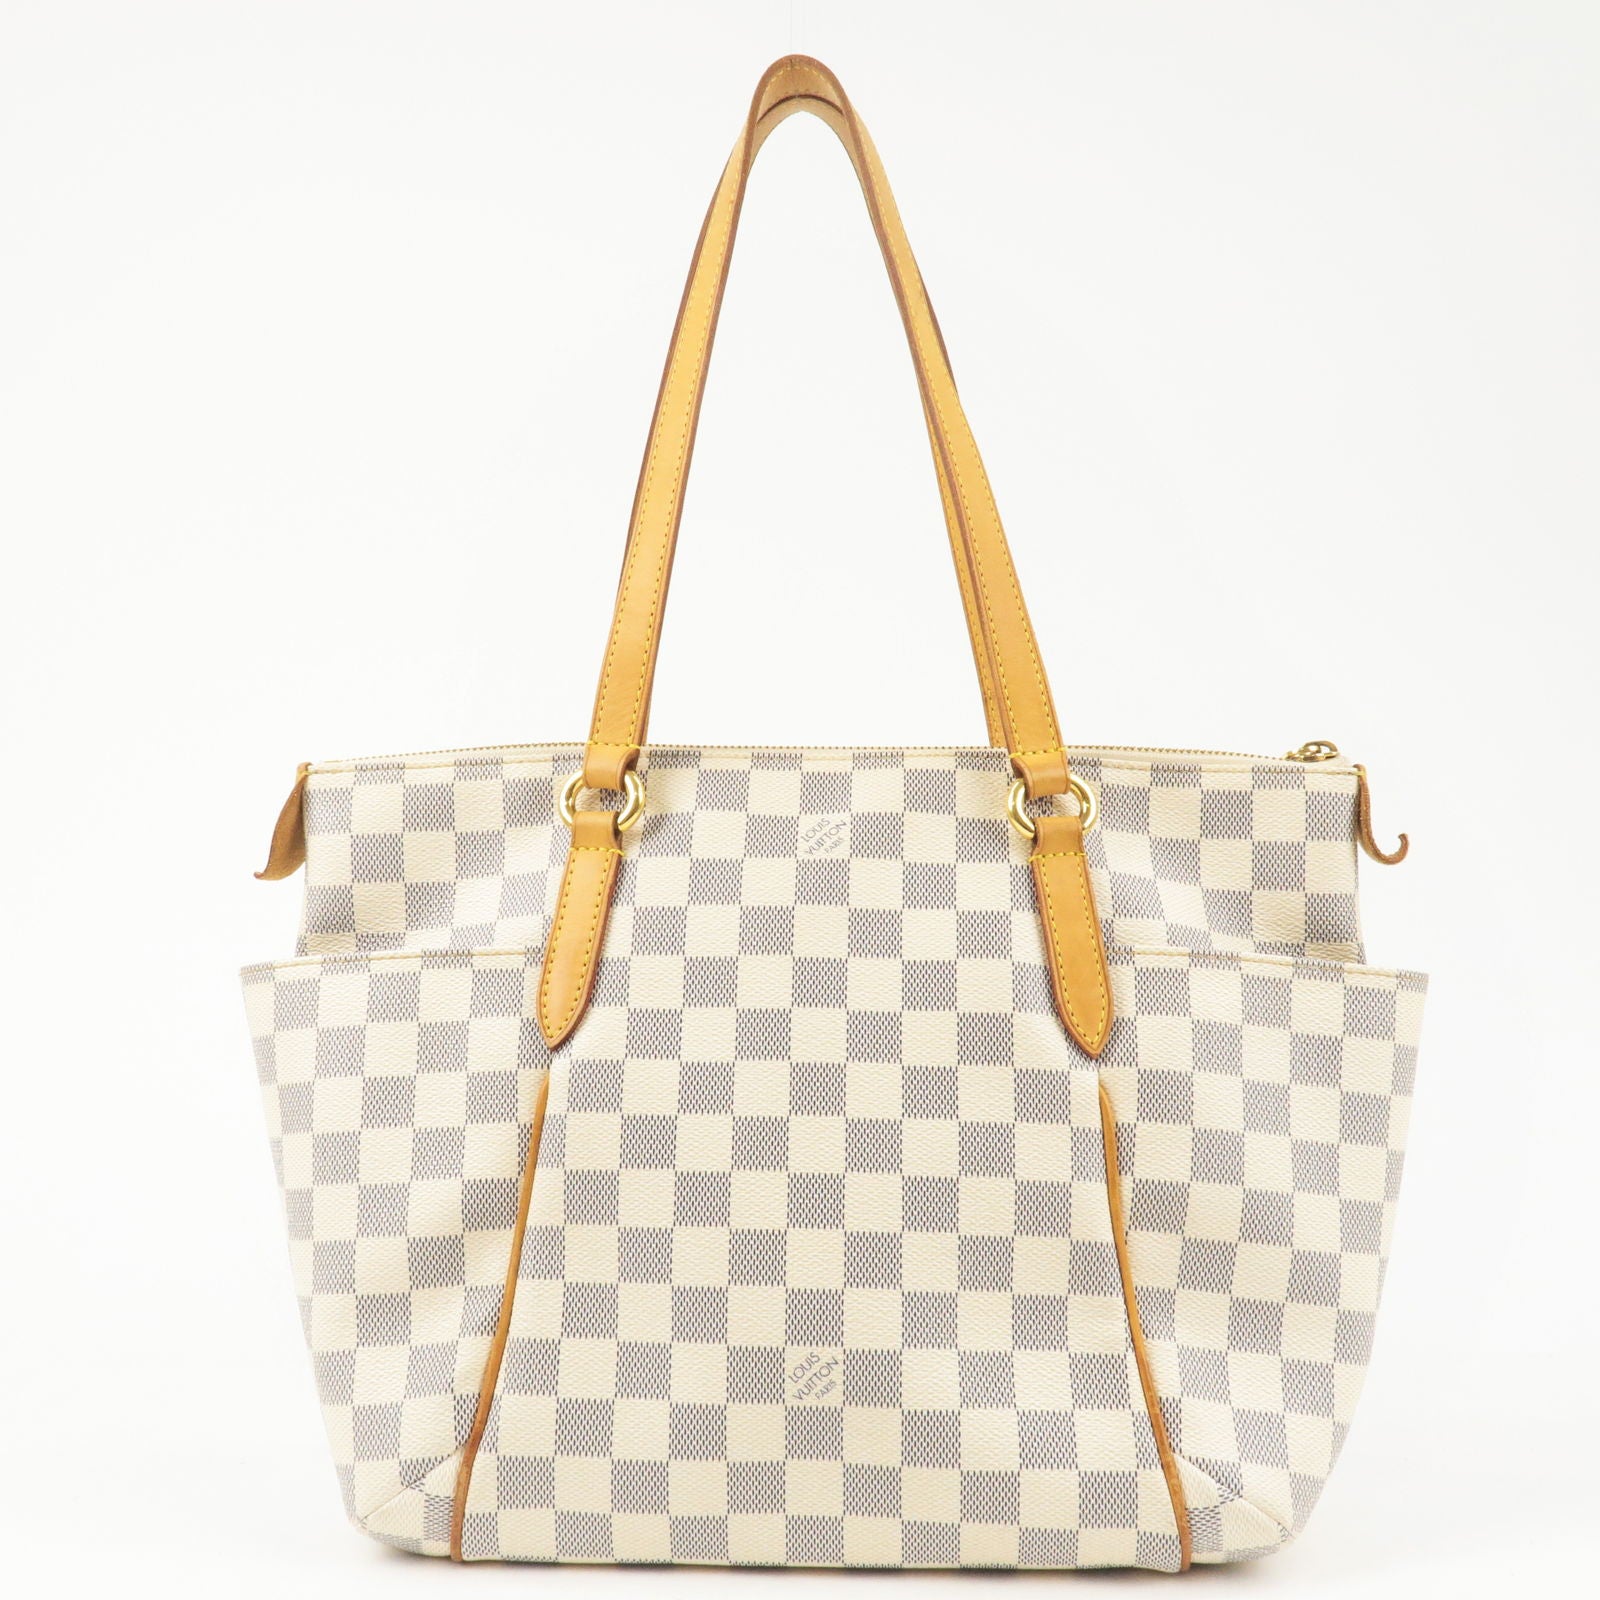 Louis Vuitton, Bags, Louis Vuitton Damier Azur Totally Pm Shoulder Bag  Totes